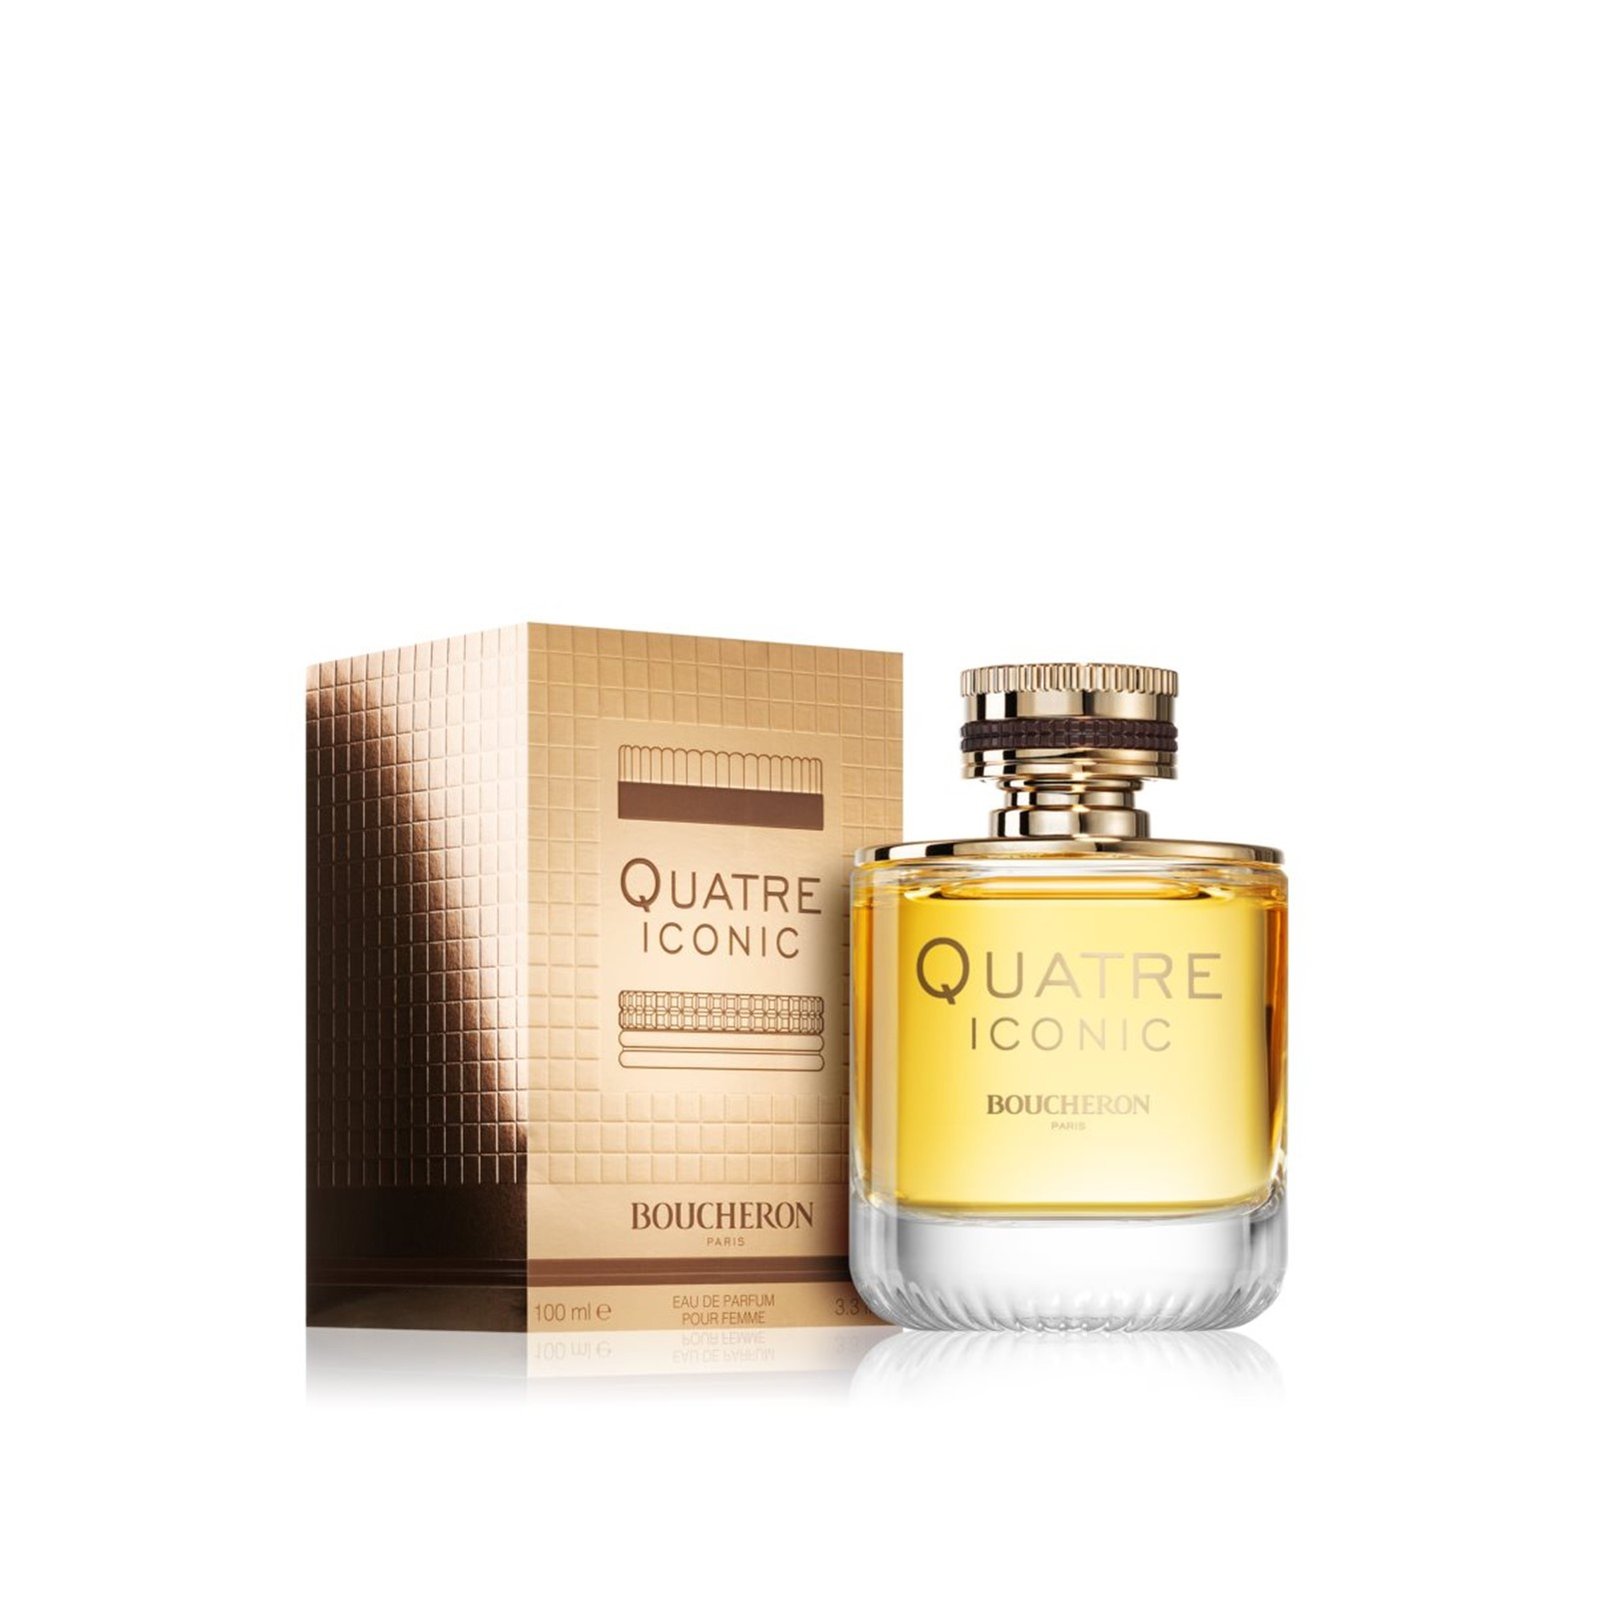 Boucheron Quatre Iconic Eau de Parfum For Women 100ml (3.3 fl oz)